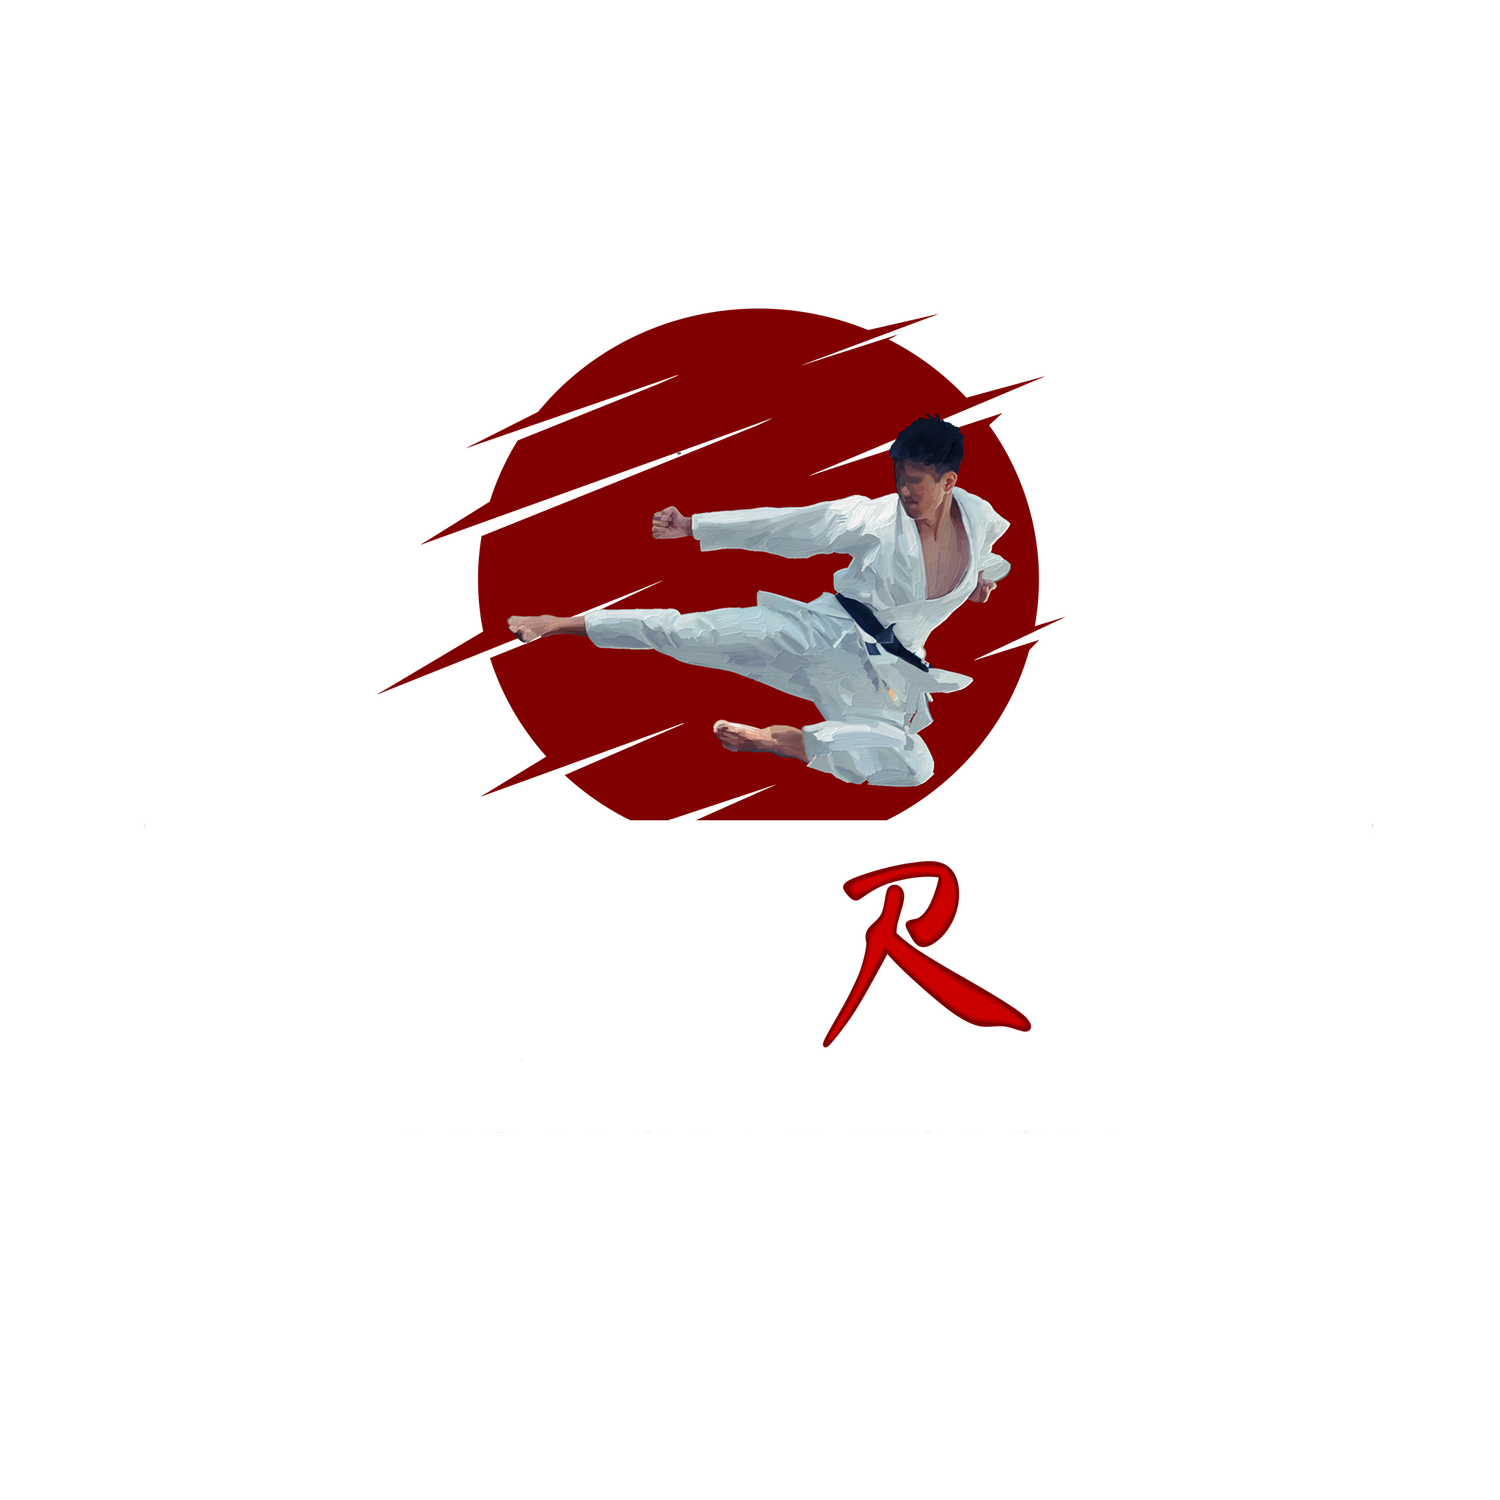 Condron Action Services